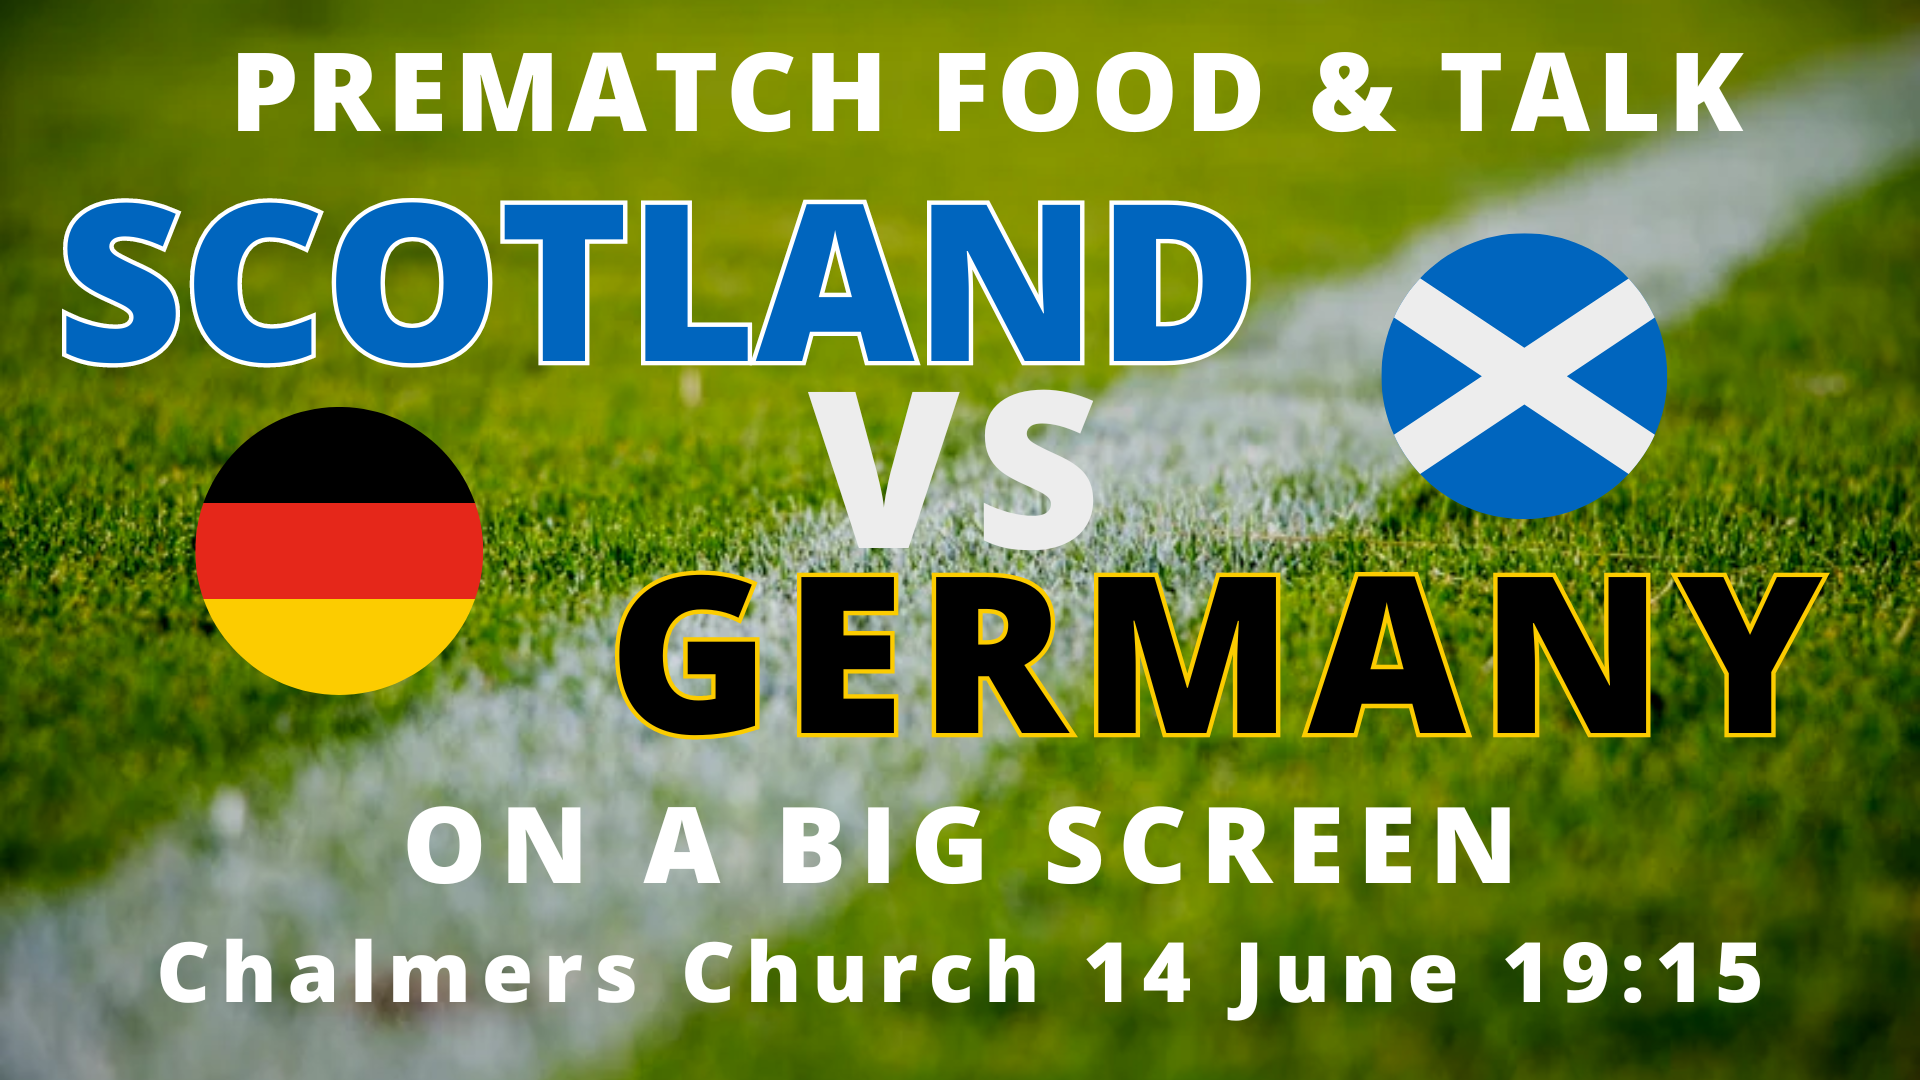 Scotland vs Germany outreach